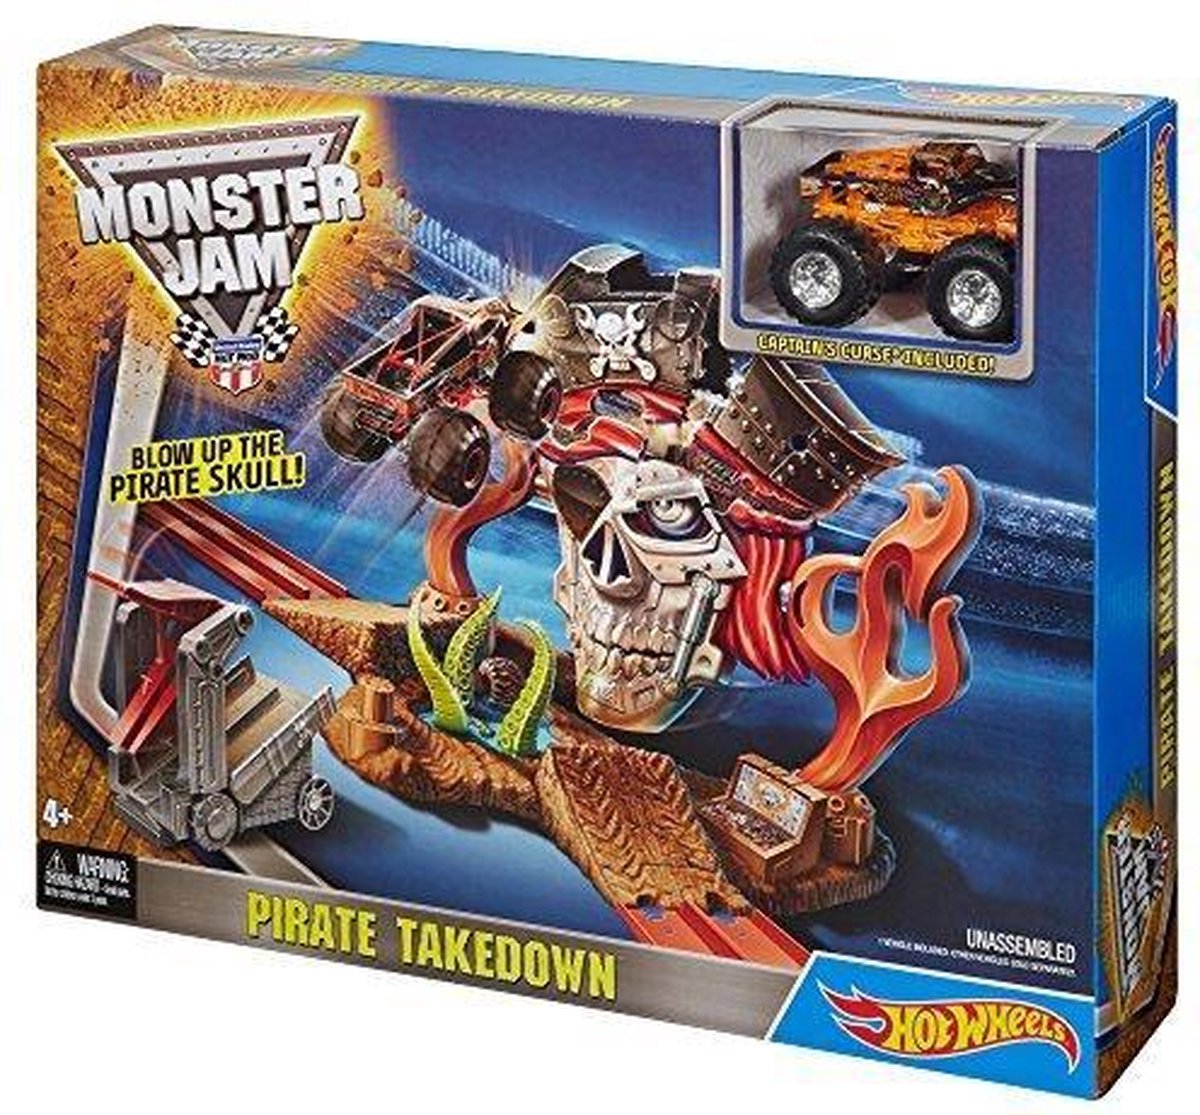 Hot Wheels Monster Jam Pirate Takedown Speelset Bol Com